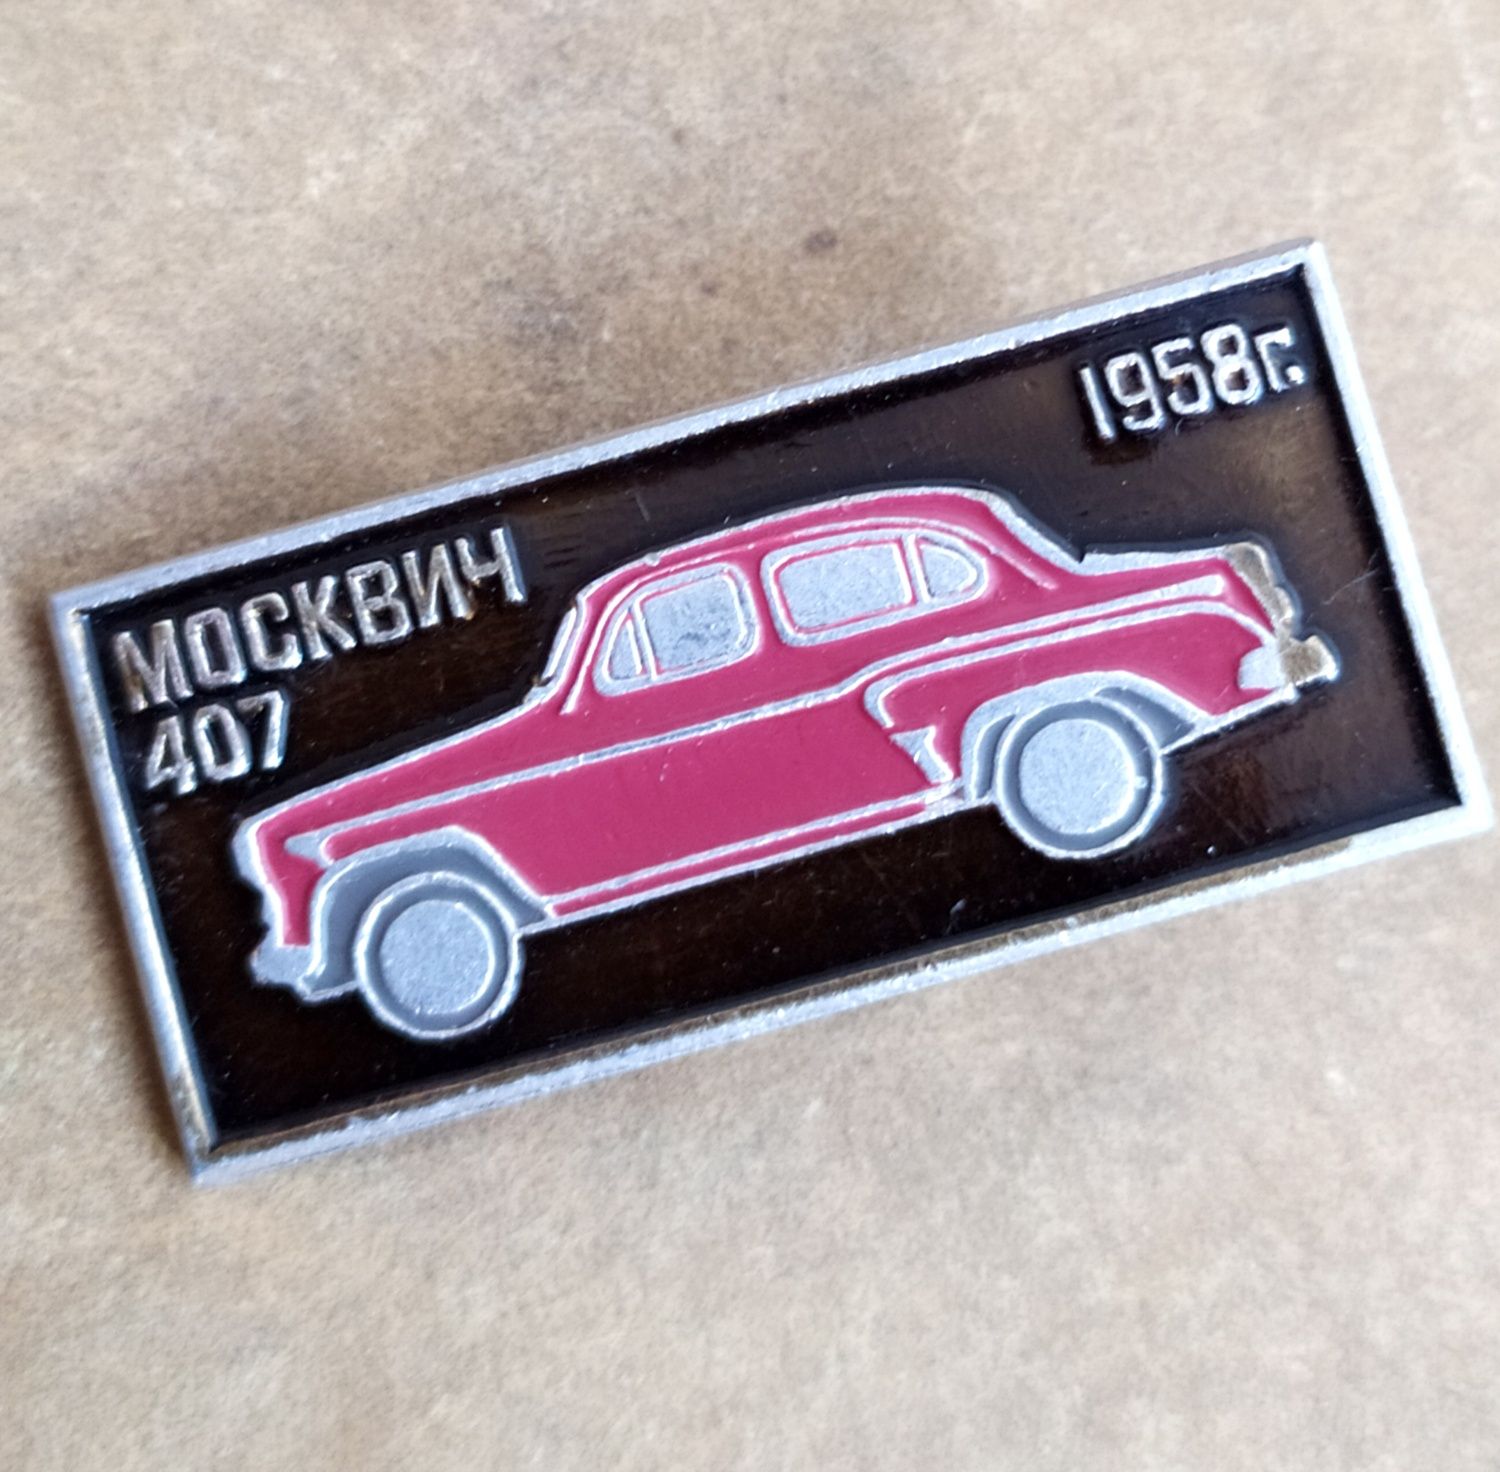 407 Москвич автолегенды СССР автомобильный значок шильдик СССР ретро